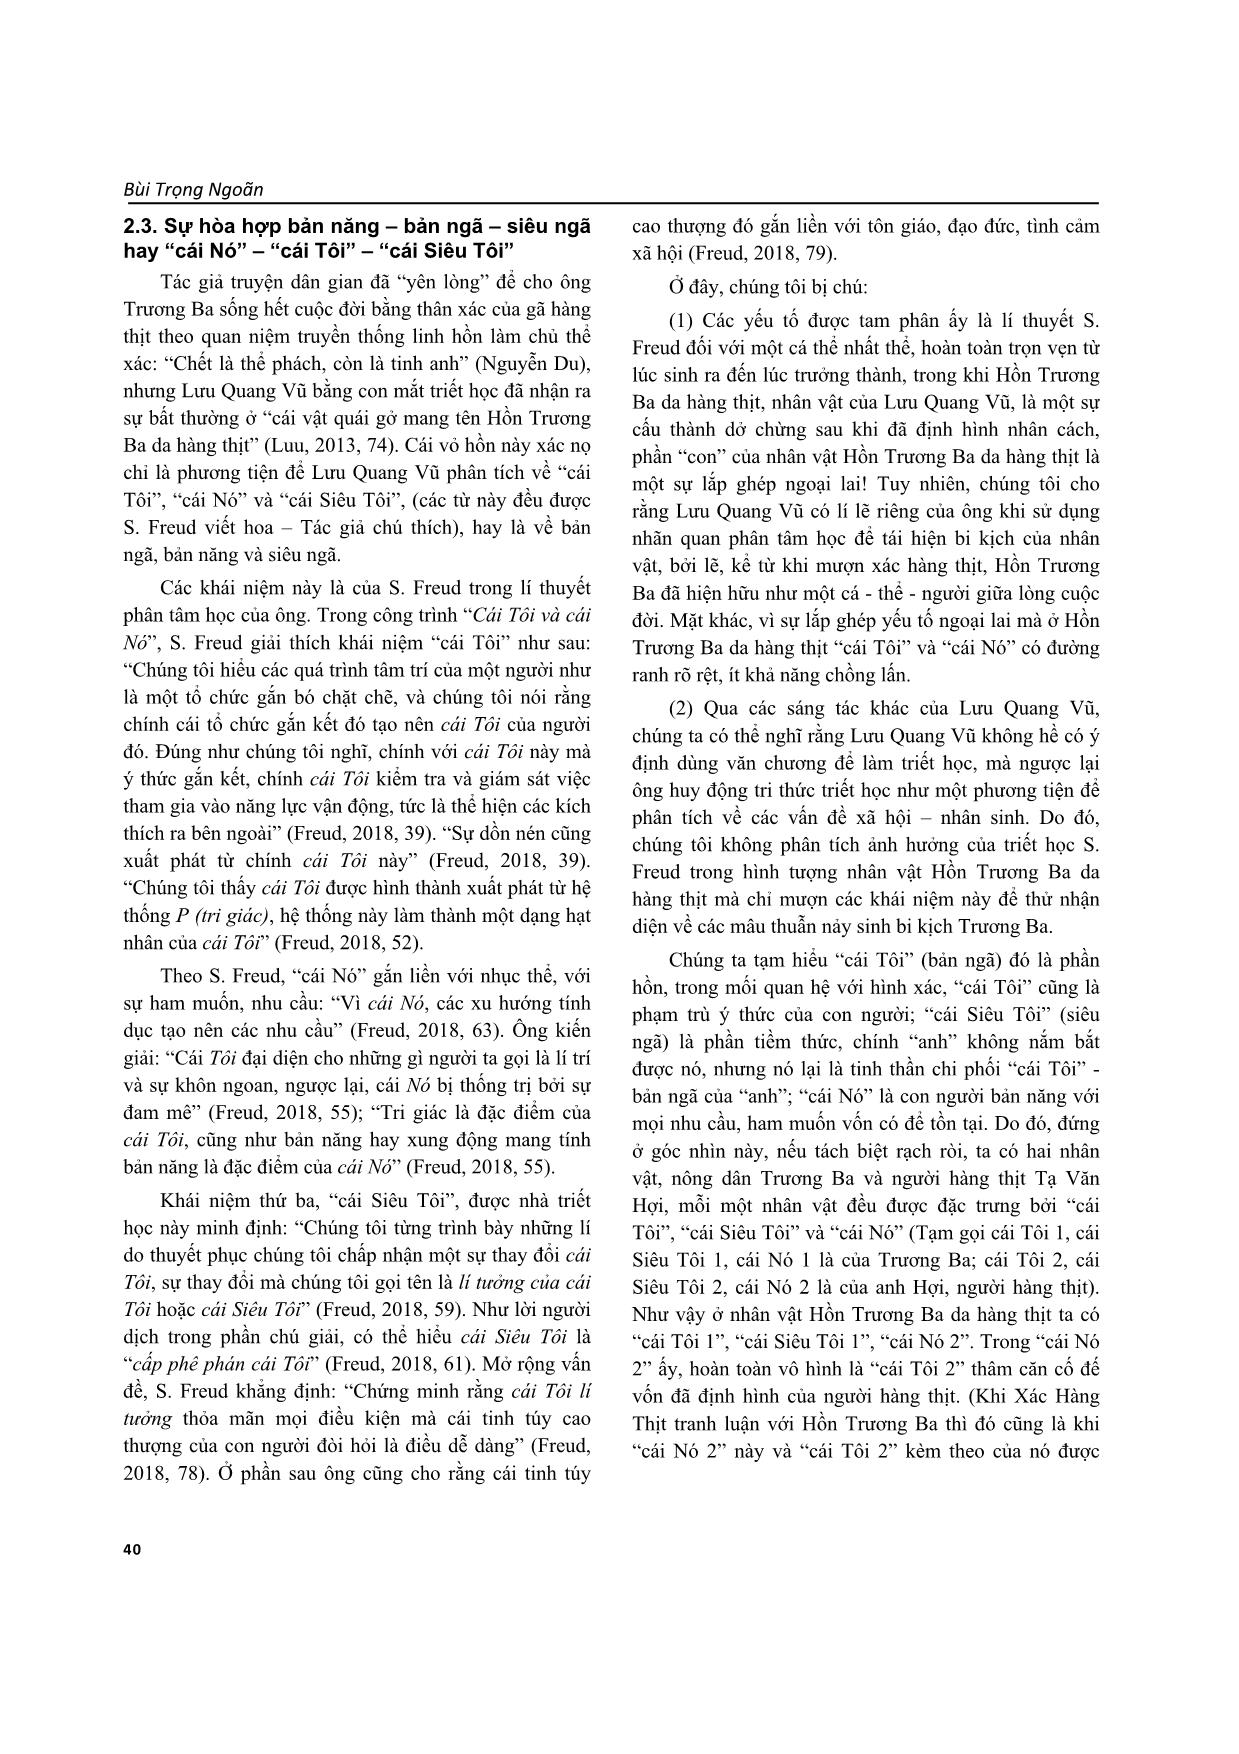 Ý tưởng triết luận và sáng tạo nghệ thuật của Lưu Quang Vũ trong kịch bản “Hồn Trương Ba da hàng thịt” trang 5